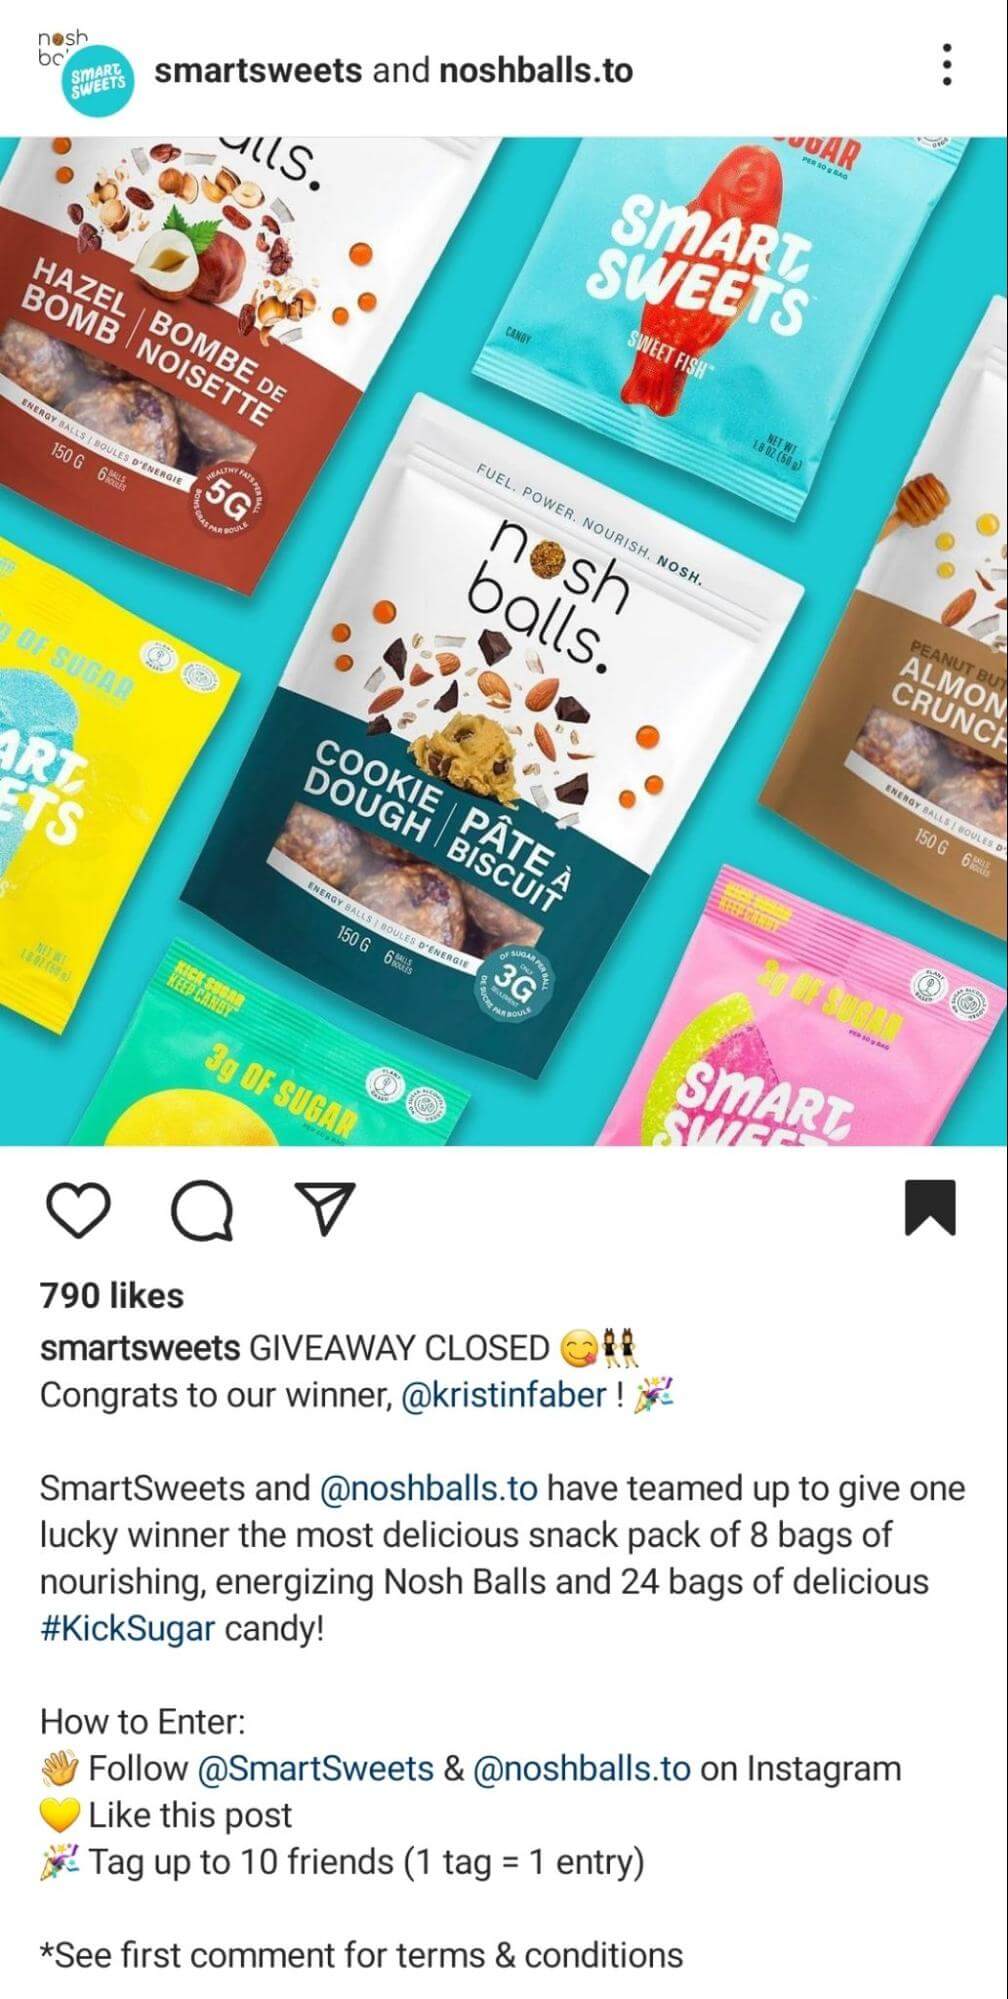 instagram-partner-ads-cobranded-giveaway-collab-3